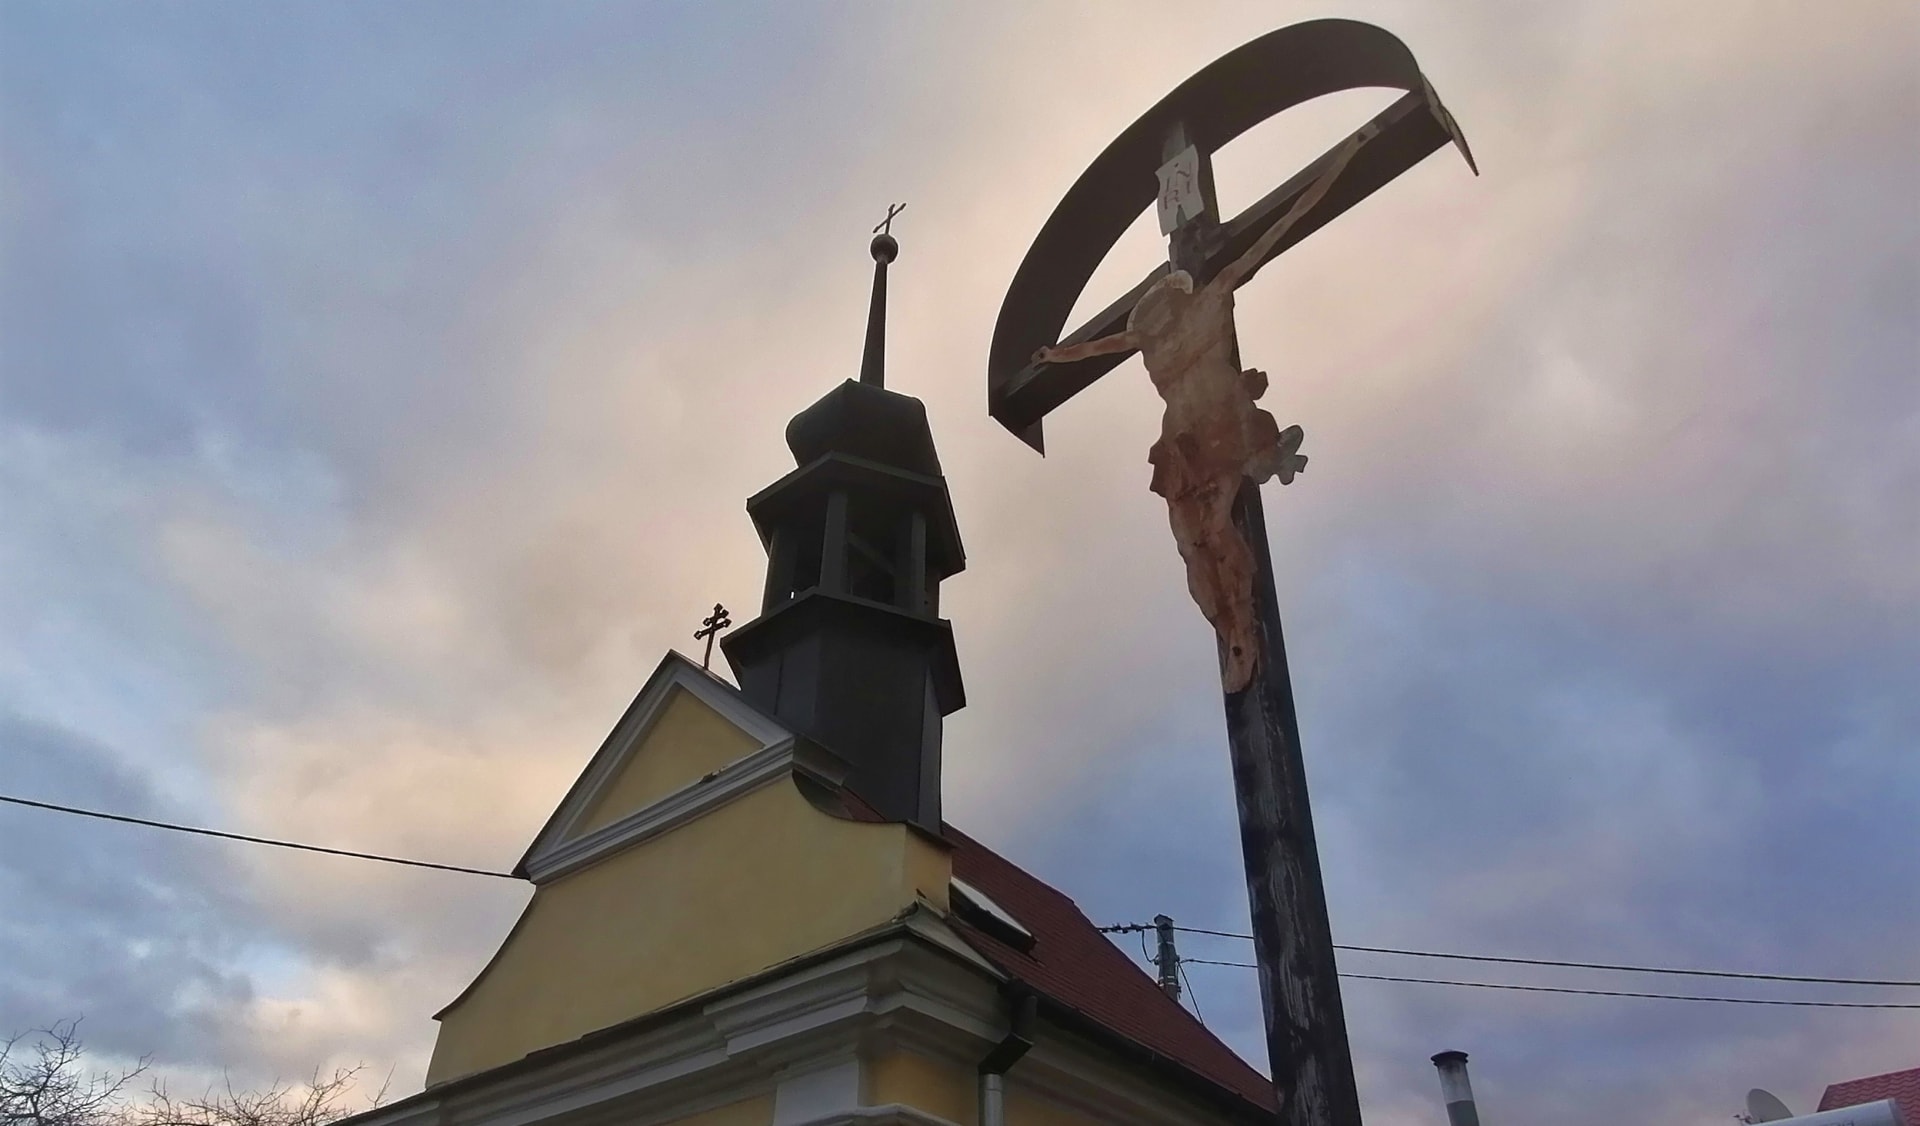 Morová kaple nad Novým Jičínem na severovýchodní Moravě. Místo modliteb za odvrácení covidu